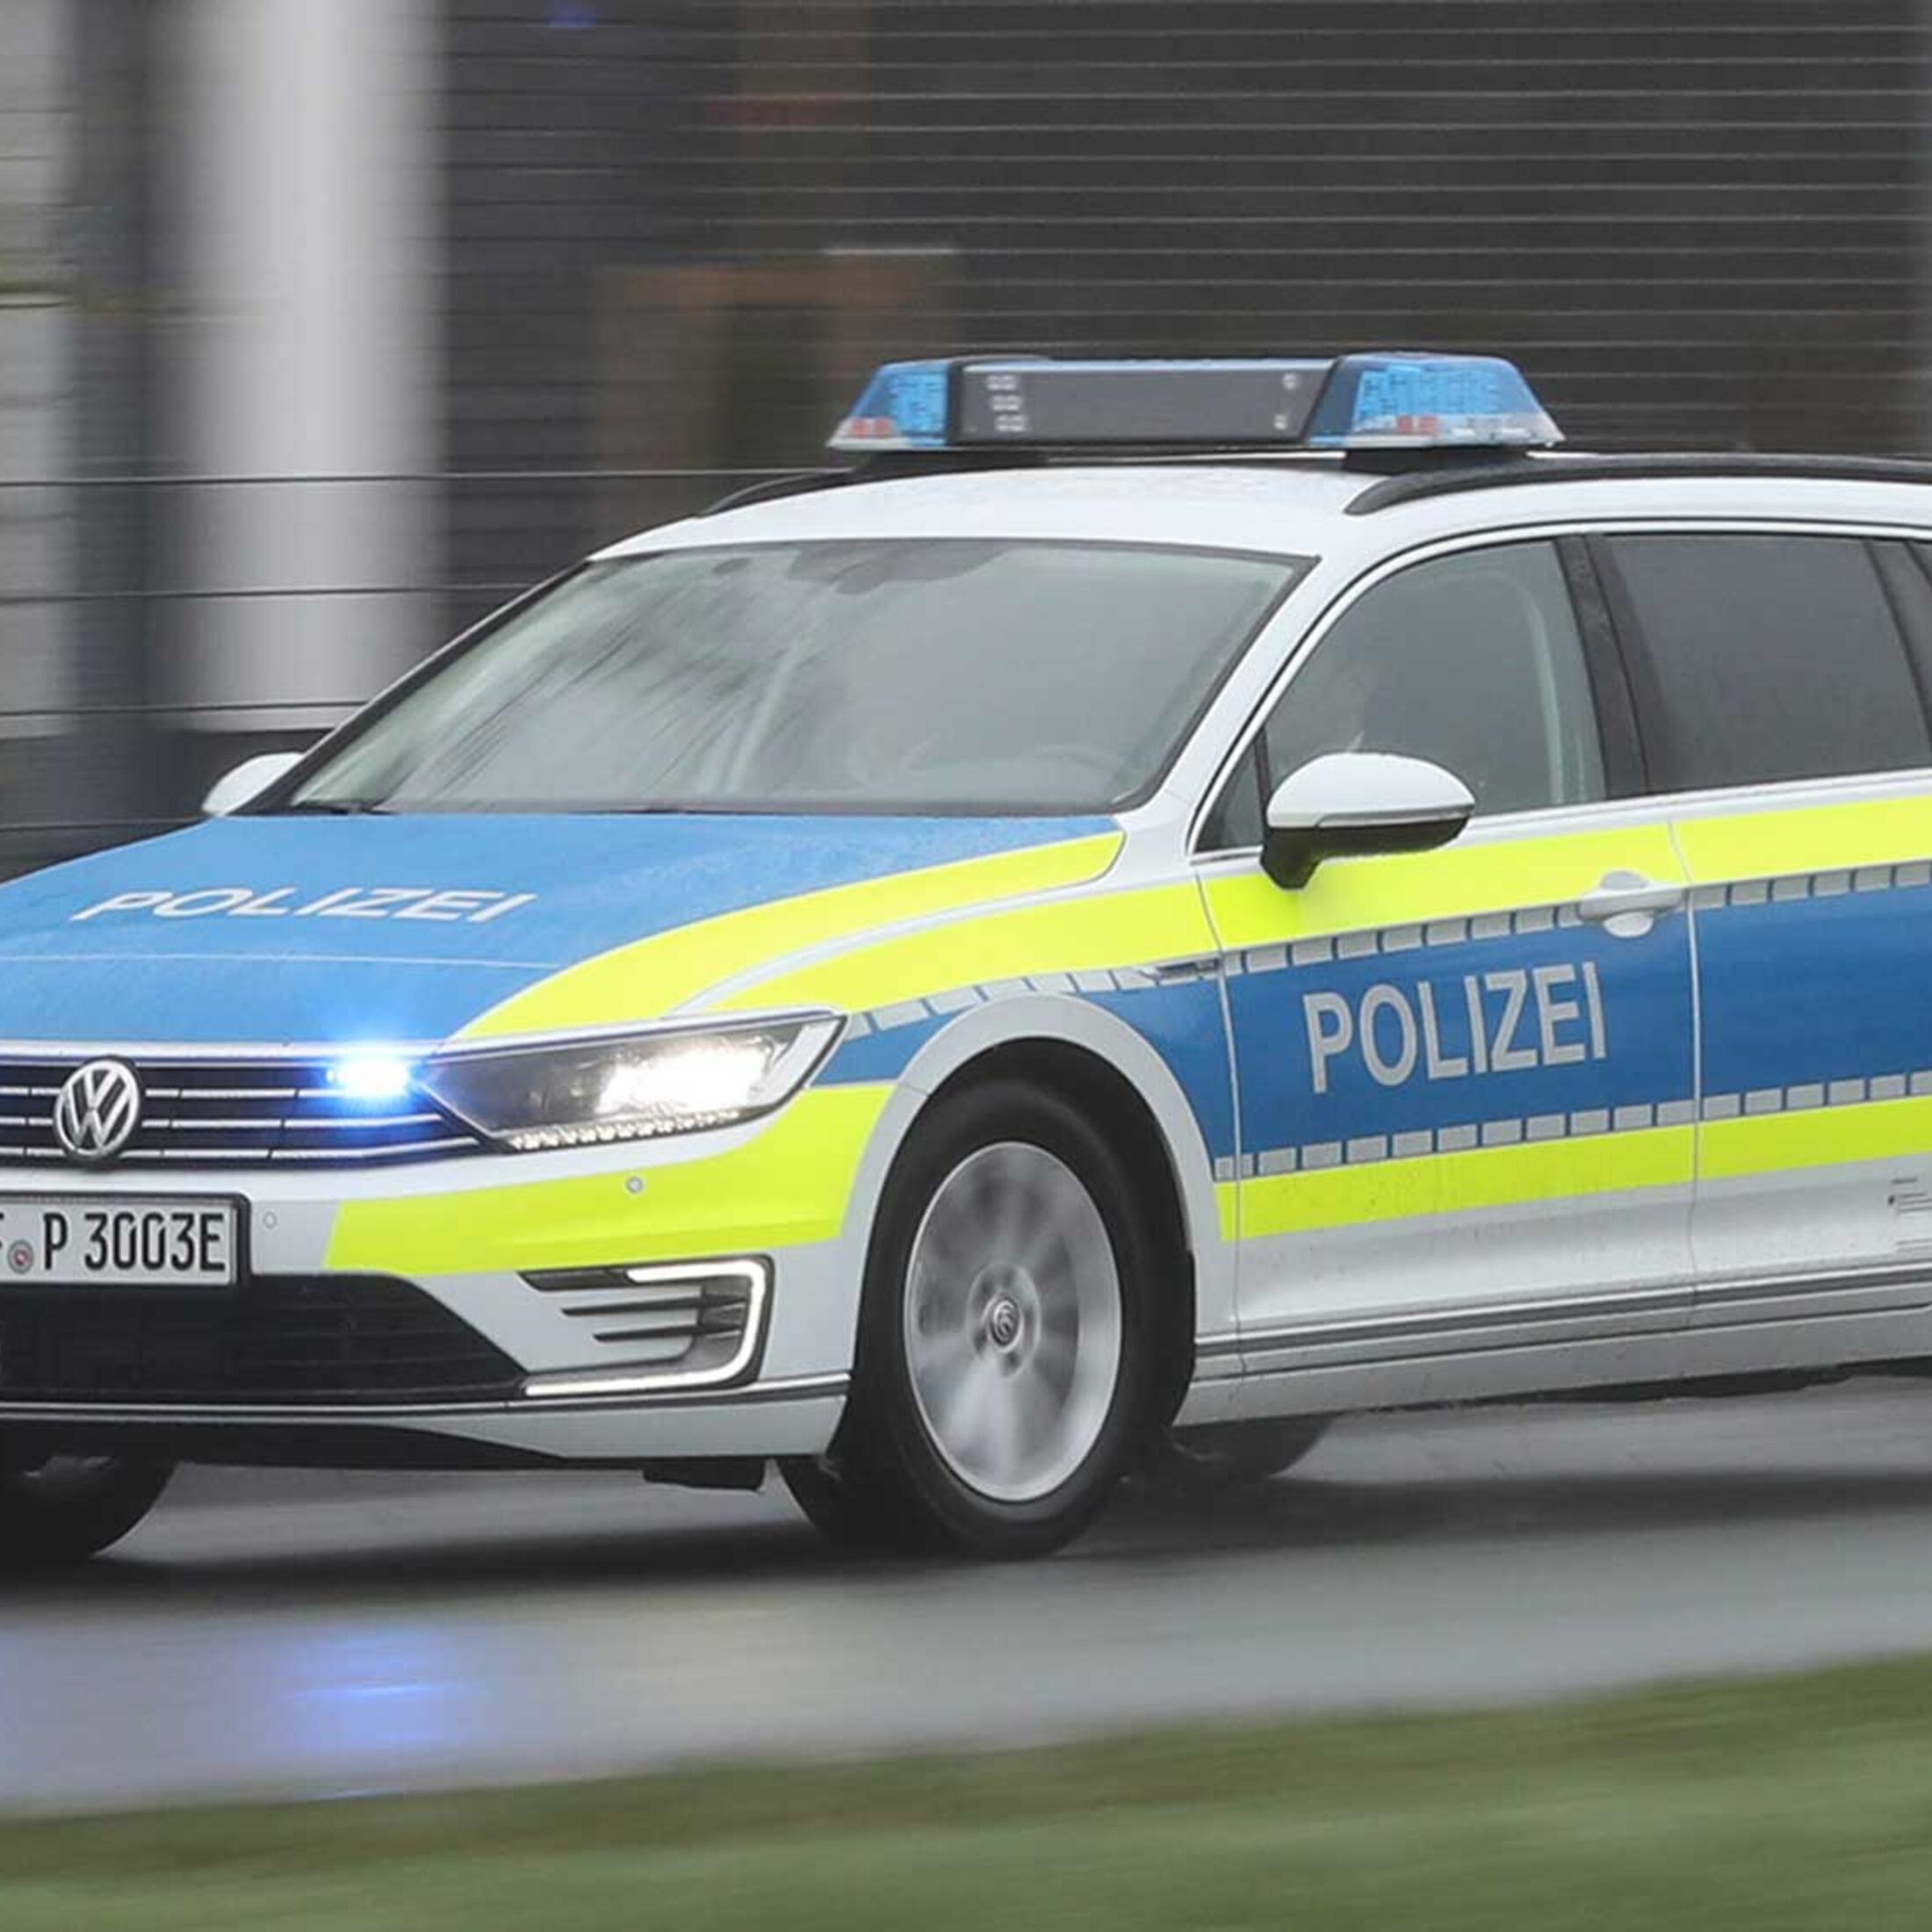 https://imgr1.auto-motor-und-sport.de/VW-Passat-GTE-Polizei-jsonLd1x1-43413825-1687496.jpg